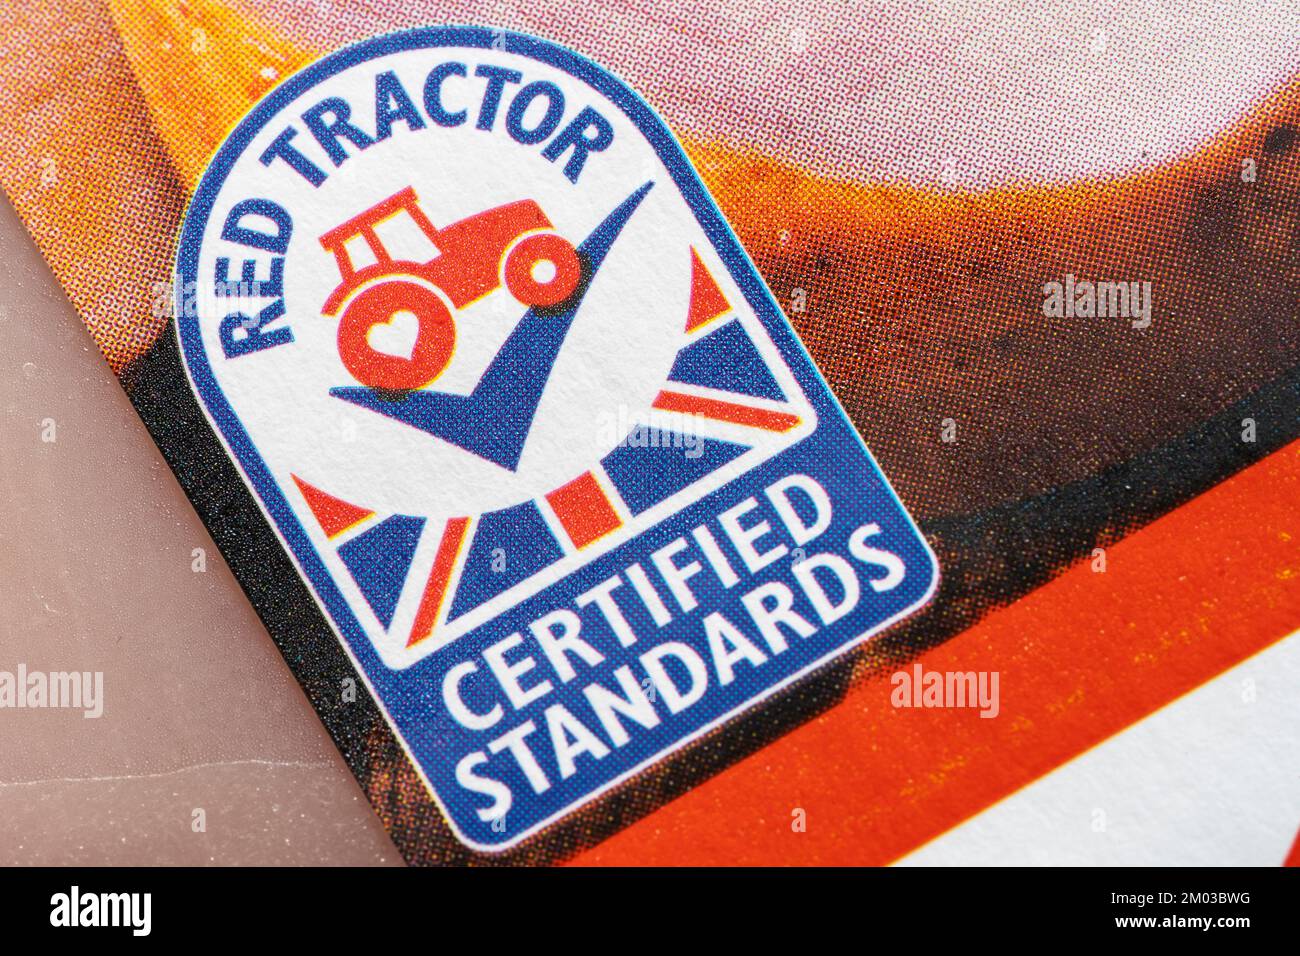 Gros plan sur le logo Red Tractor. Assured Food Standards est une entreprise britannique qui délivre des licences pour la marque de qualité Red Tractor, un programme de certification de produit Banque D'Images